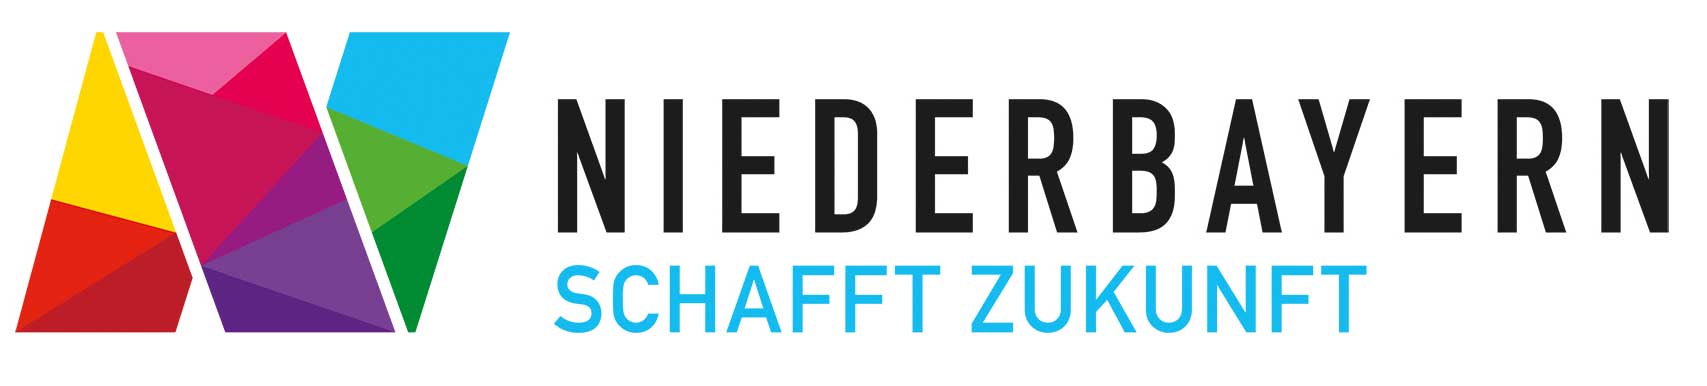 Logo Niederbayern schafft Zukunft (Grafik: Regierungsbezirk Niederbayern)